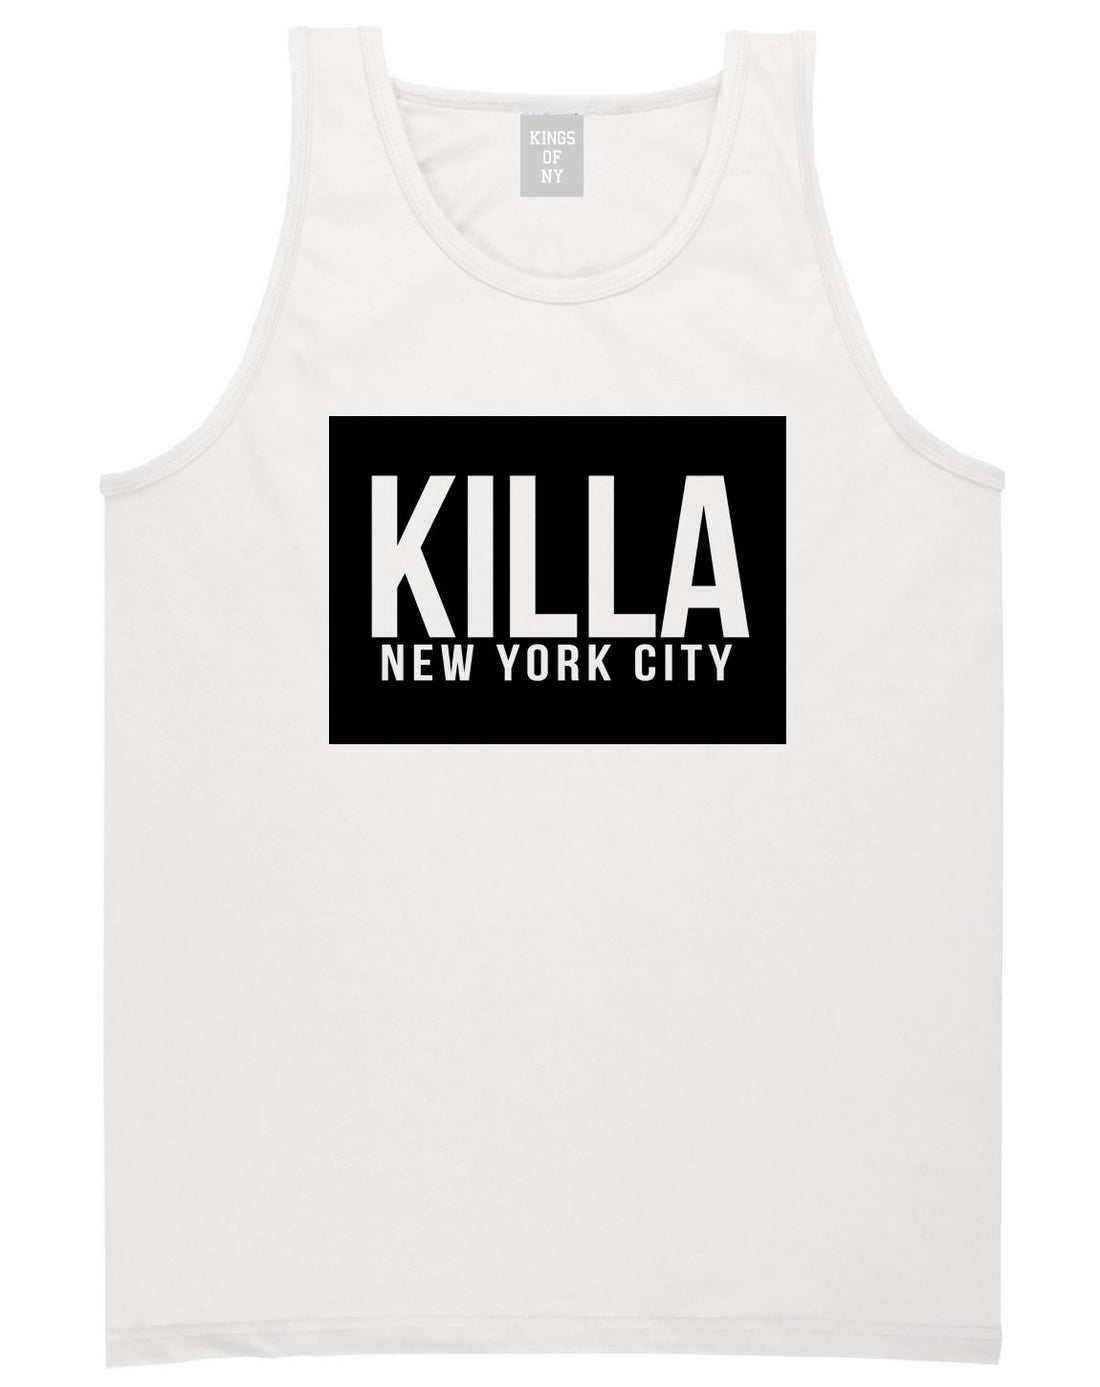 Killa New York City Harlem Tank Top in White by Kings Of NY